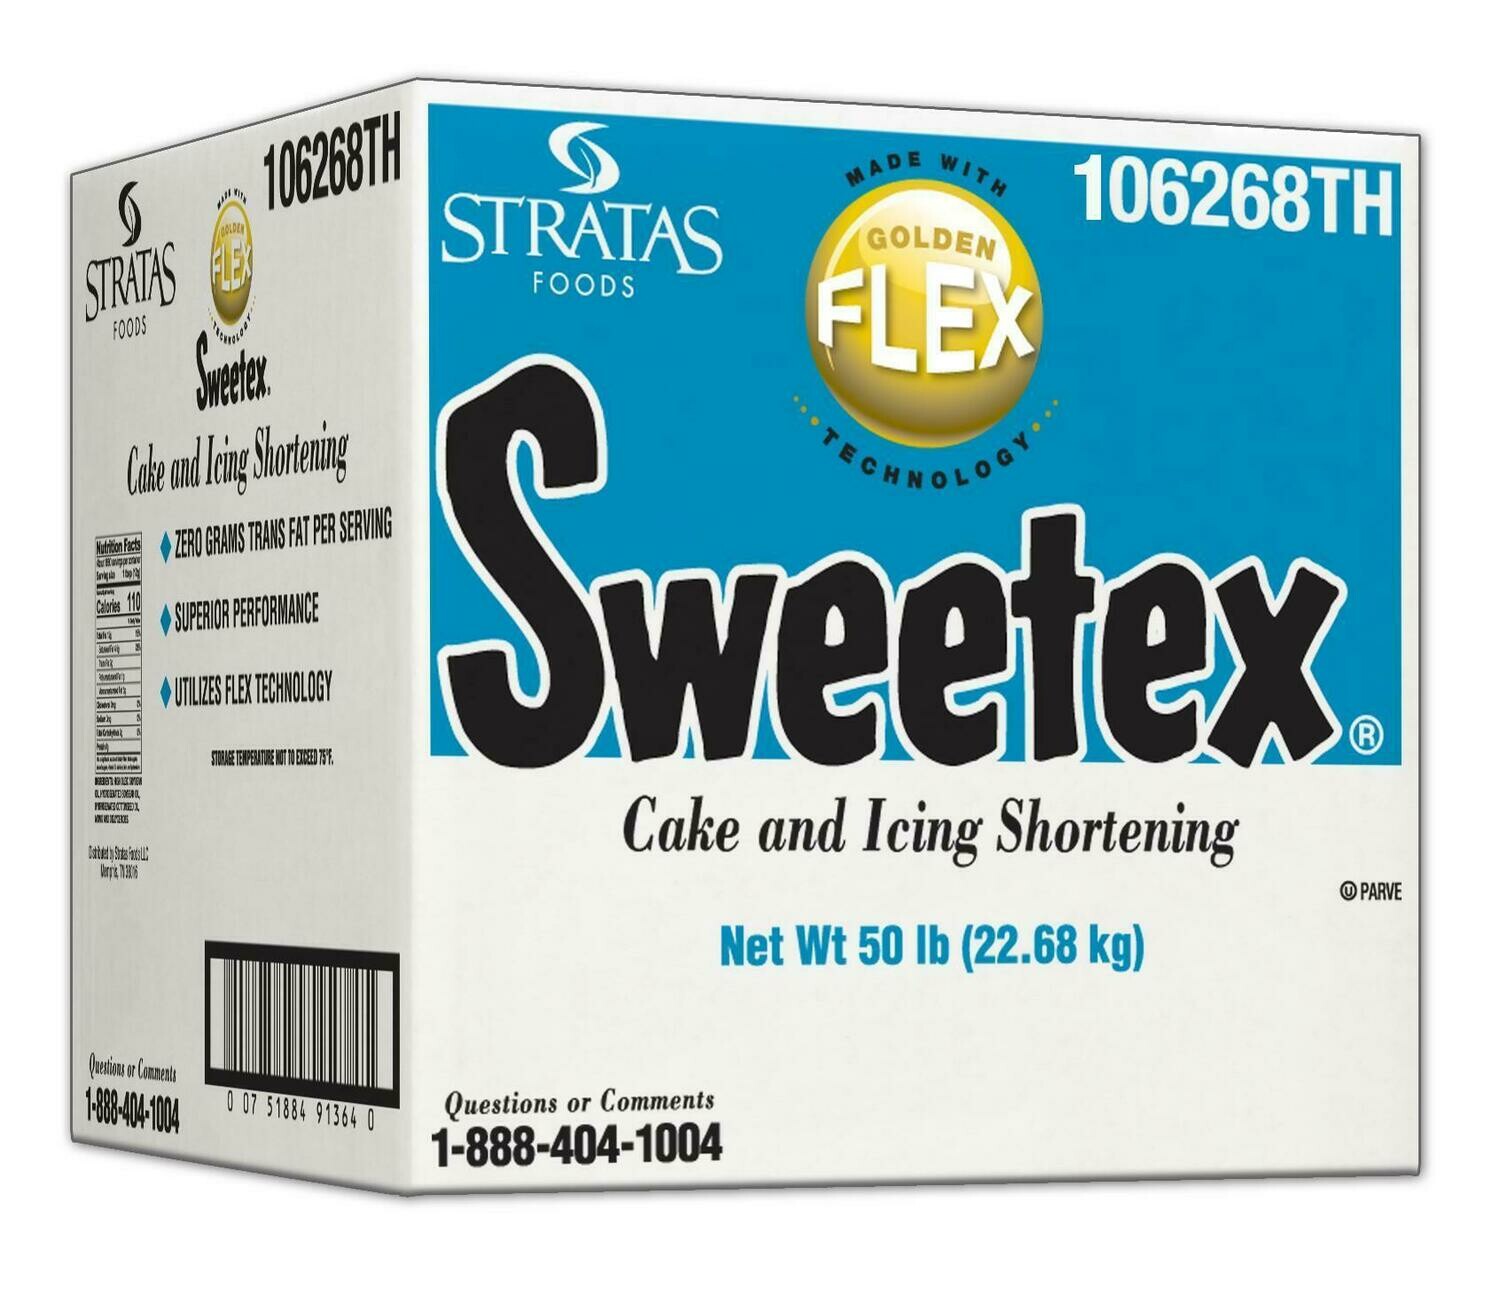 Sweetex 1lb. block